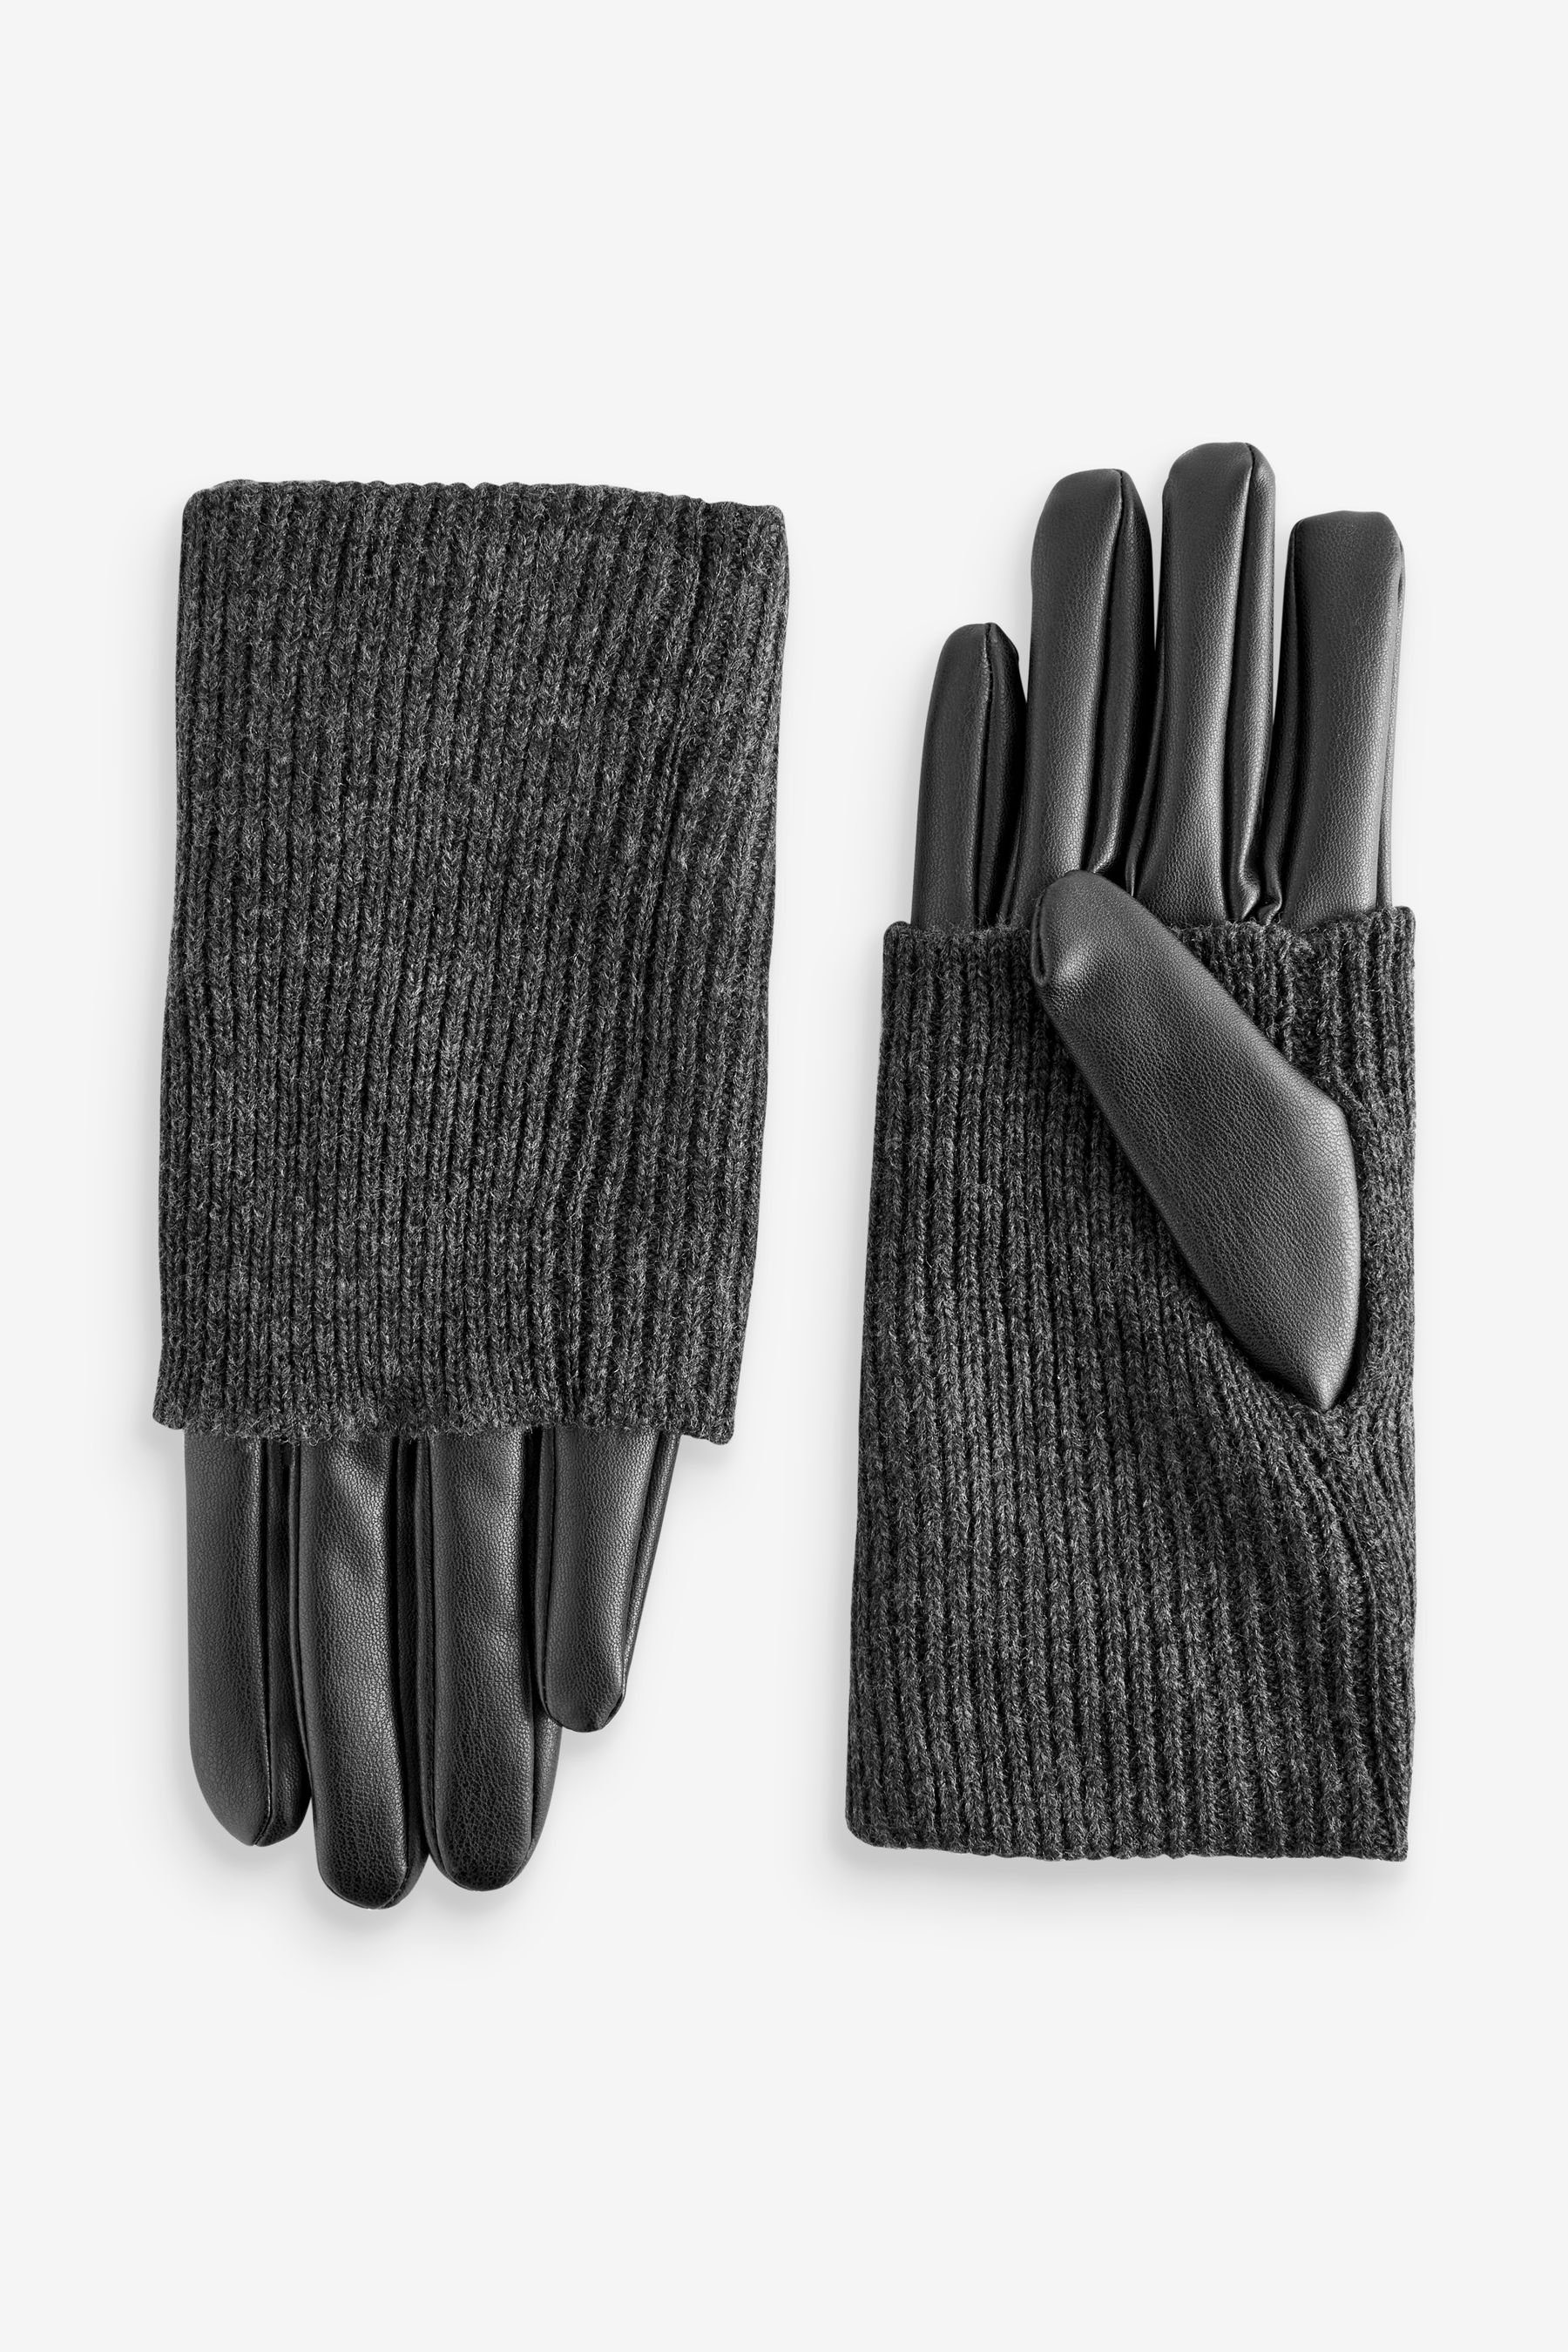 PU-Handschuh Strickhandschuhe Handwärmer Next